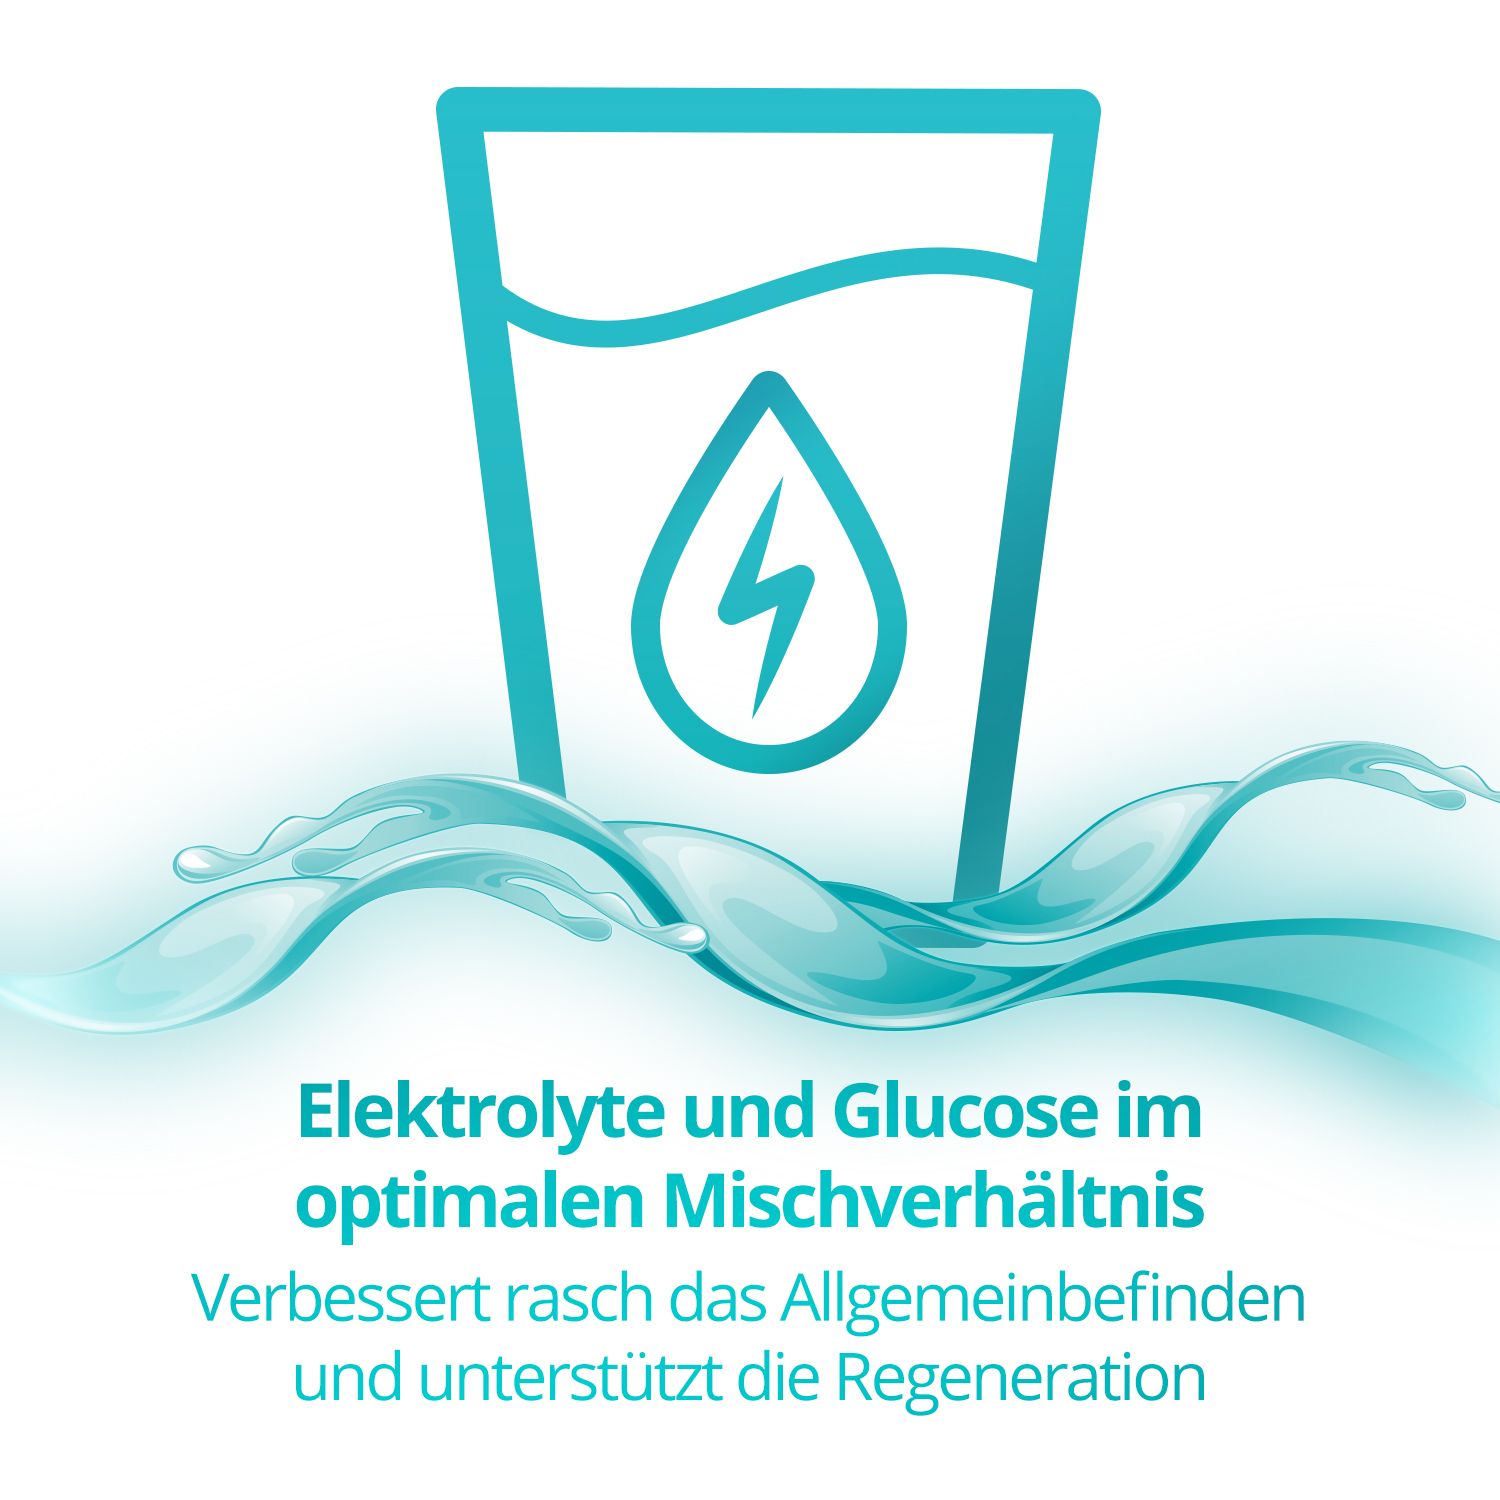 Elotrans® Elektrolyt- und Flüssigkeitszufuhr bei Durchfallbedingten Salz- und Wasserverlusten